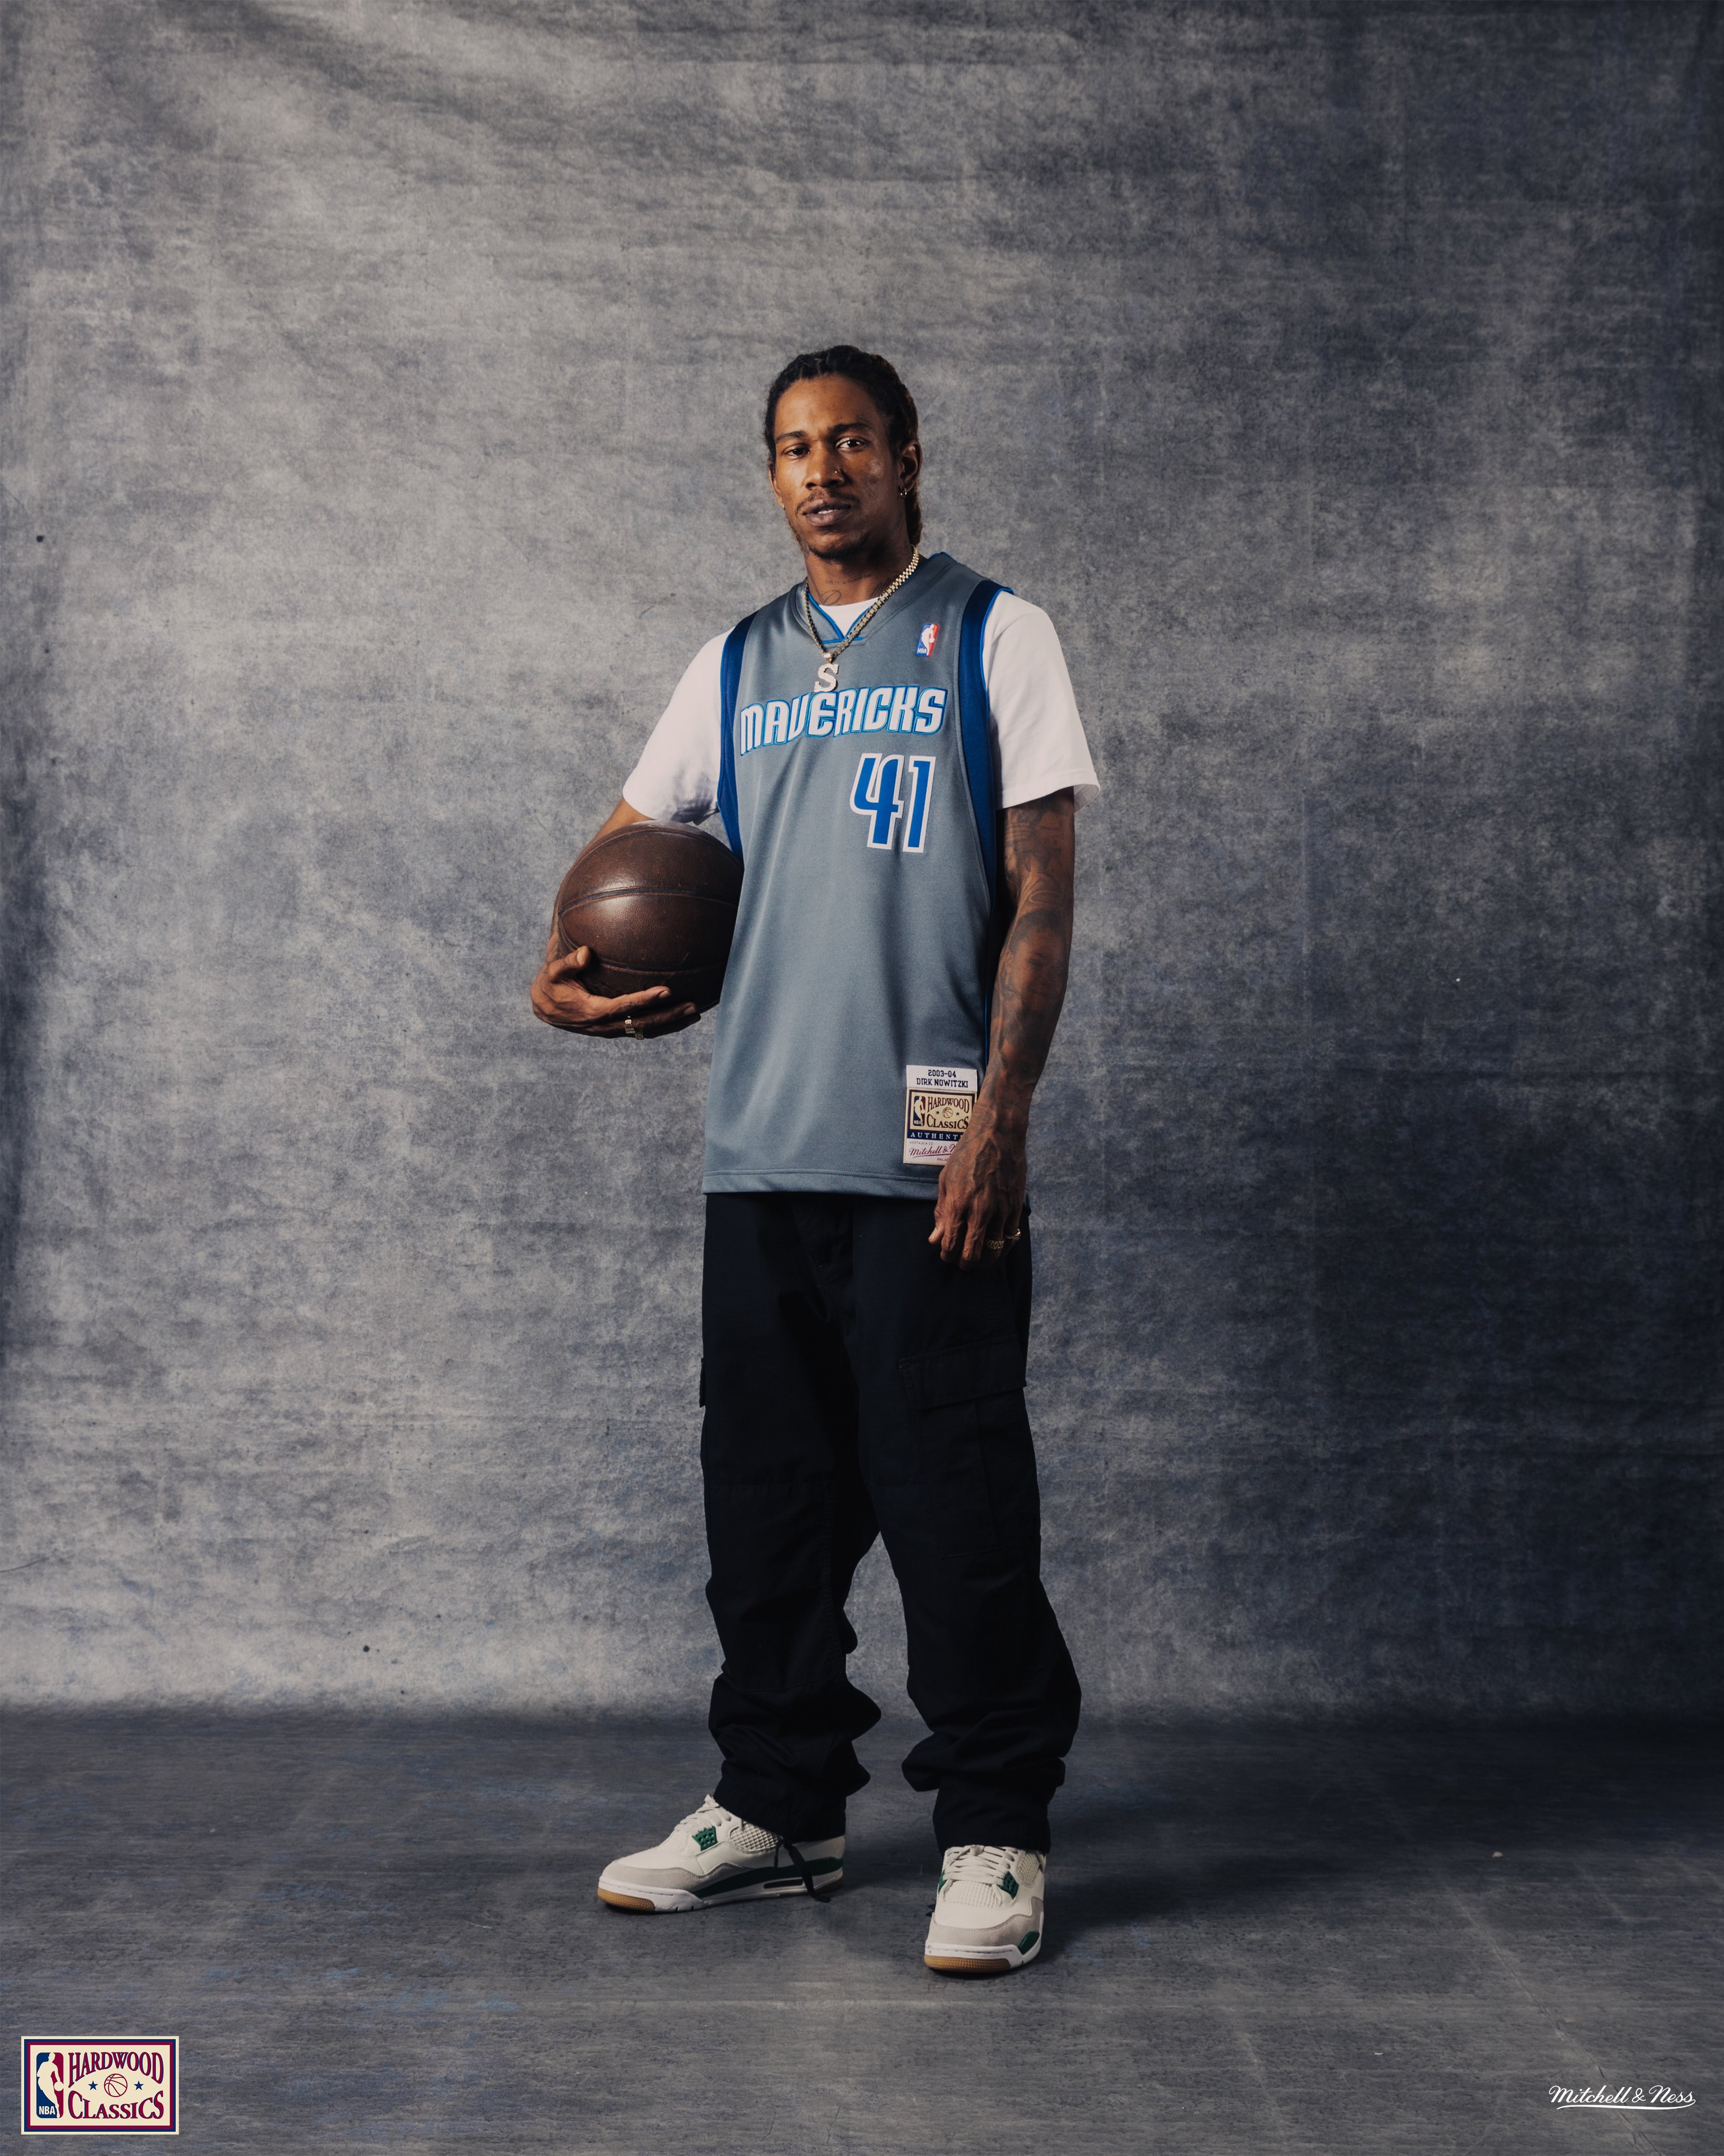 Knicks Uniform Tracker (@KnicksUniTrack) / X